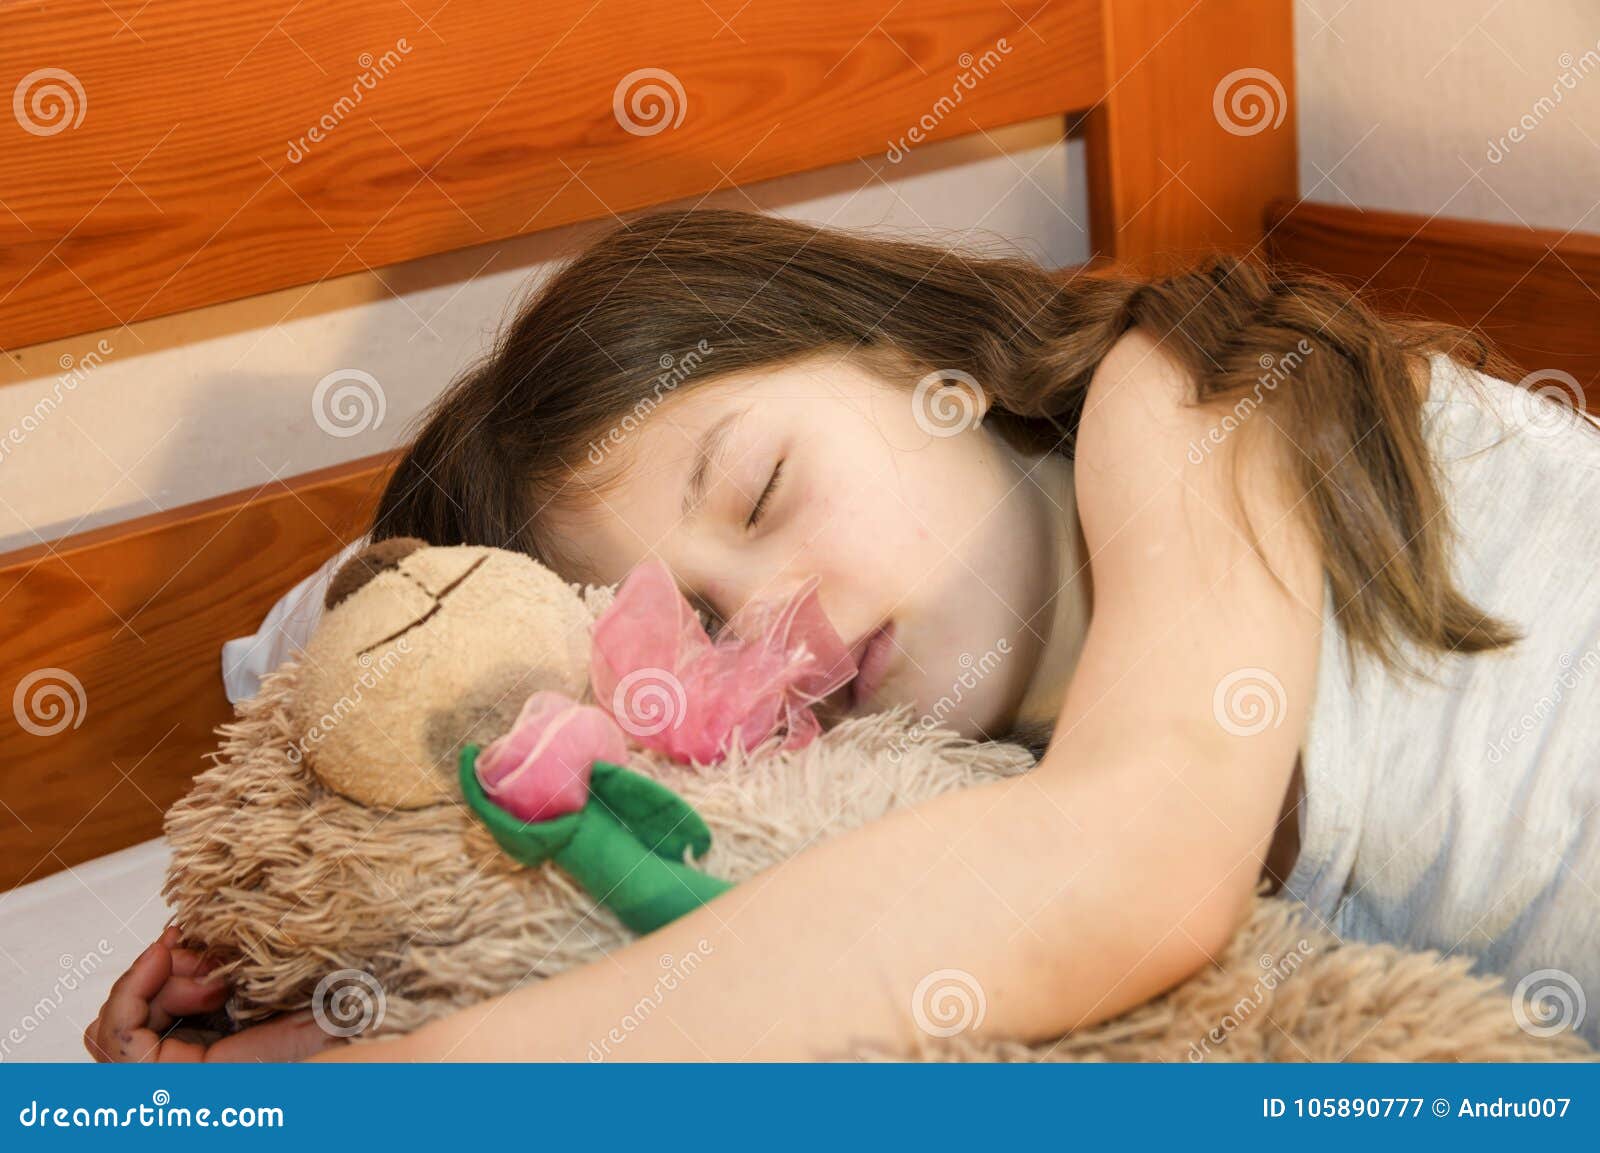 минет спящей малолетки фото 108